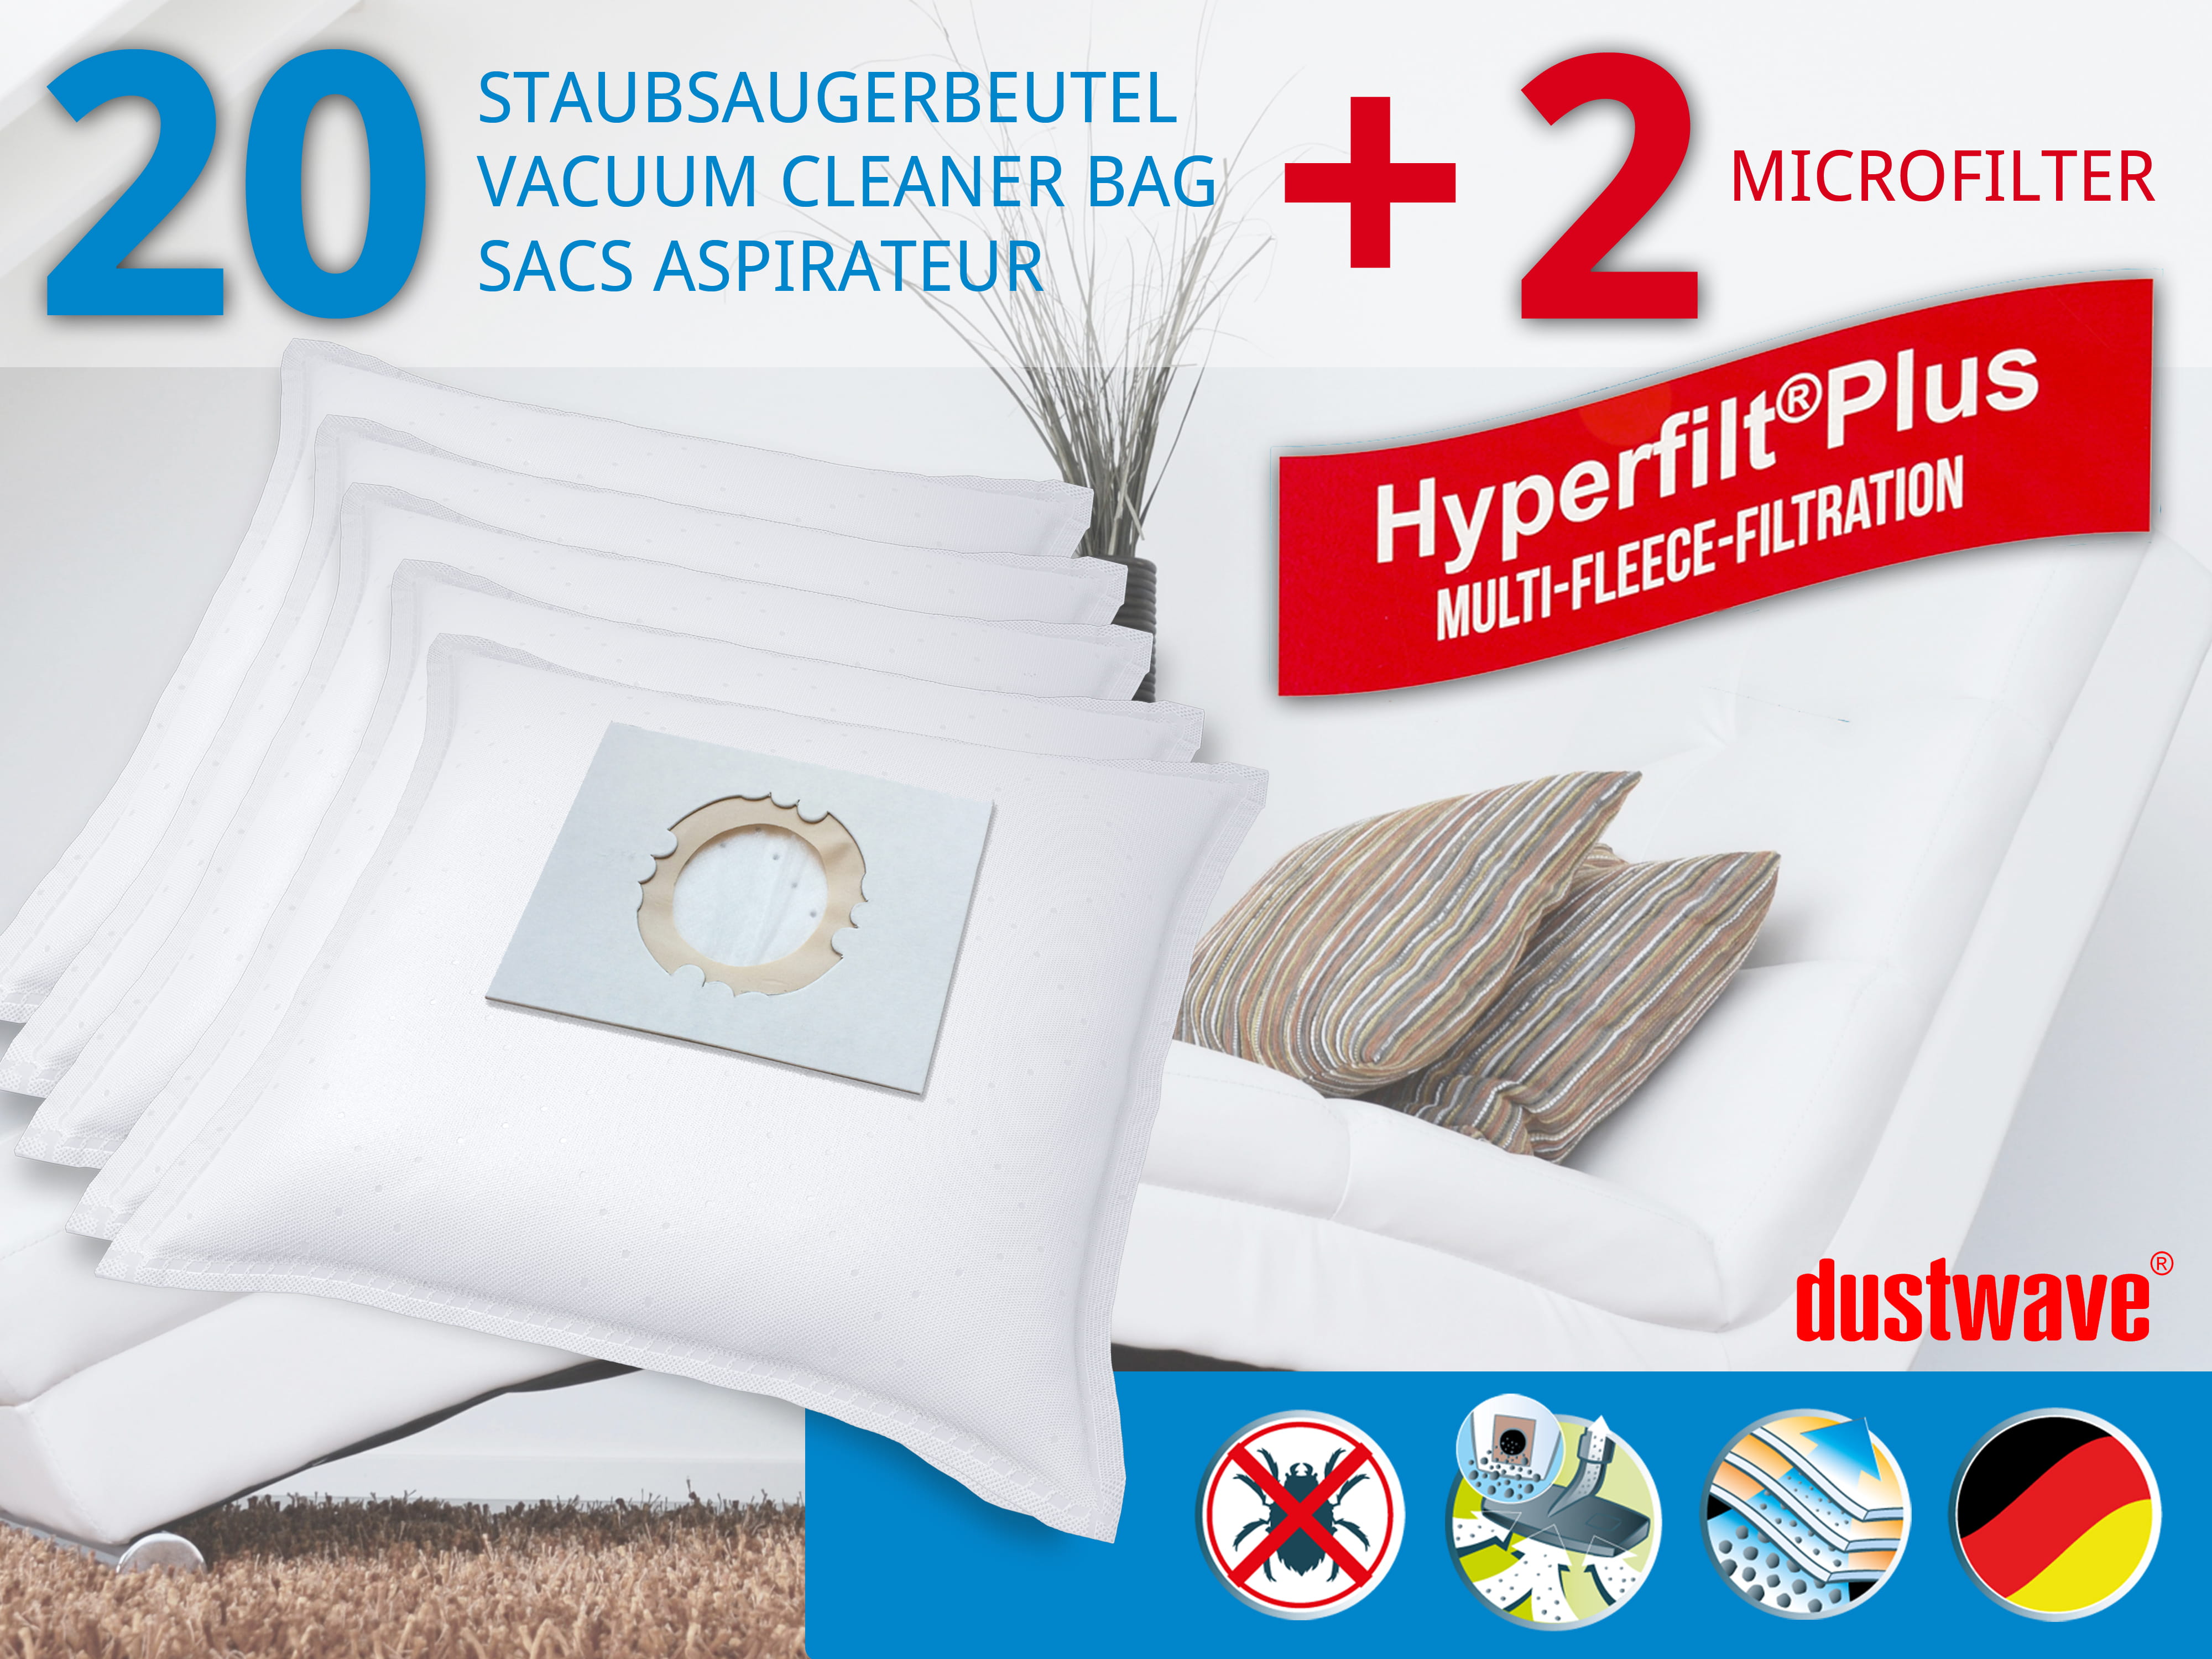 Dustwave® 20 Staubsaugerbeutel für Hoover SCST222F011 - hocheffizient, mehrlagiges Mikrovlies mit Hygieneverschluss - Made in Germany